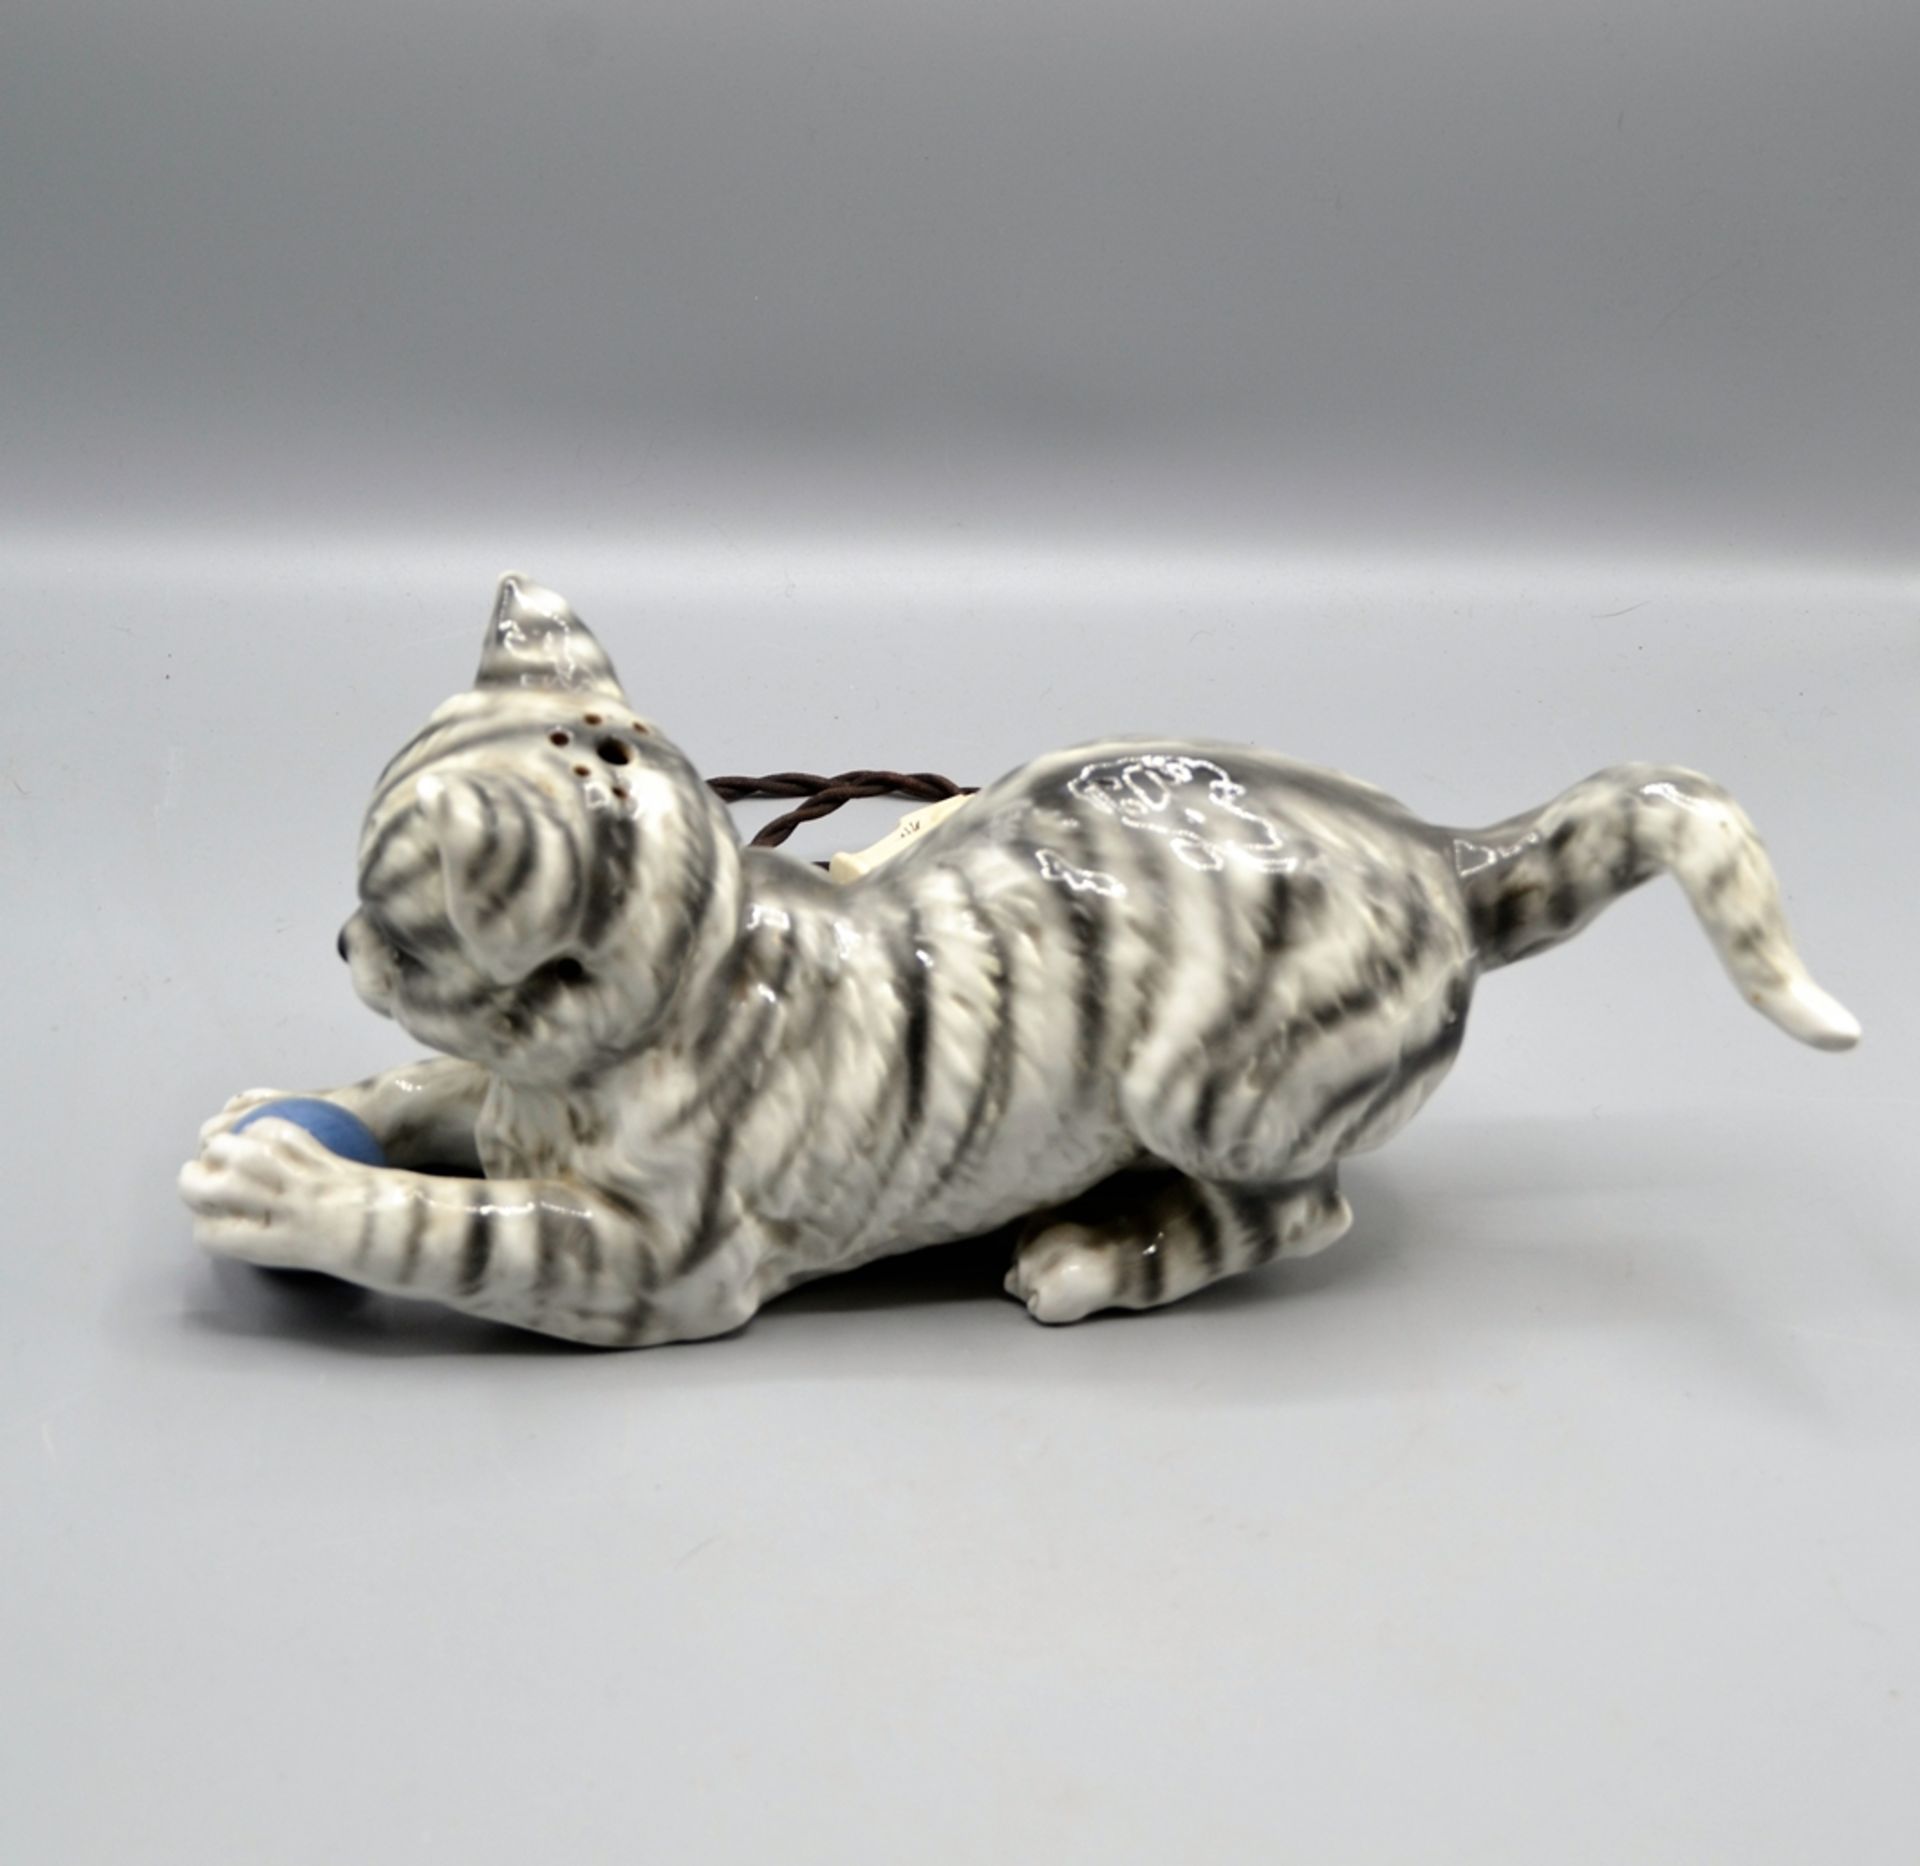 Rauchverzehrer Porzellan Katze 20 Jhdt., ca. 32 cm, Elektrik ungeprüft (vom Fachmann prüfen lassen) - Image 2 of 4